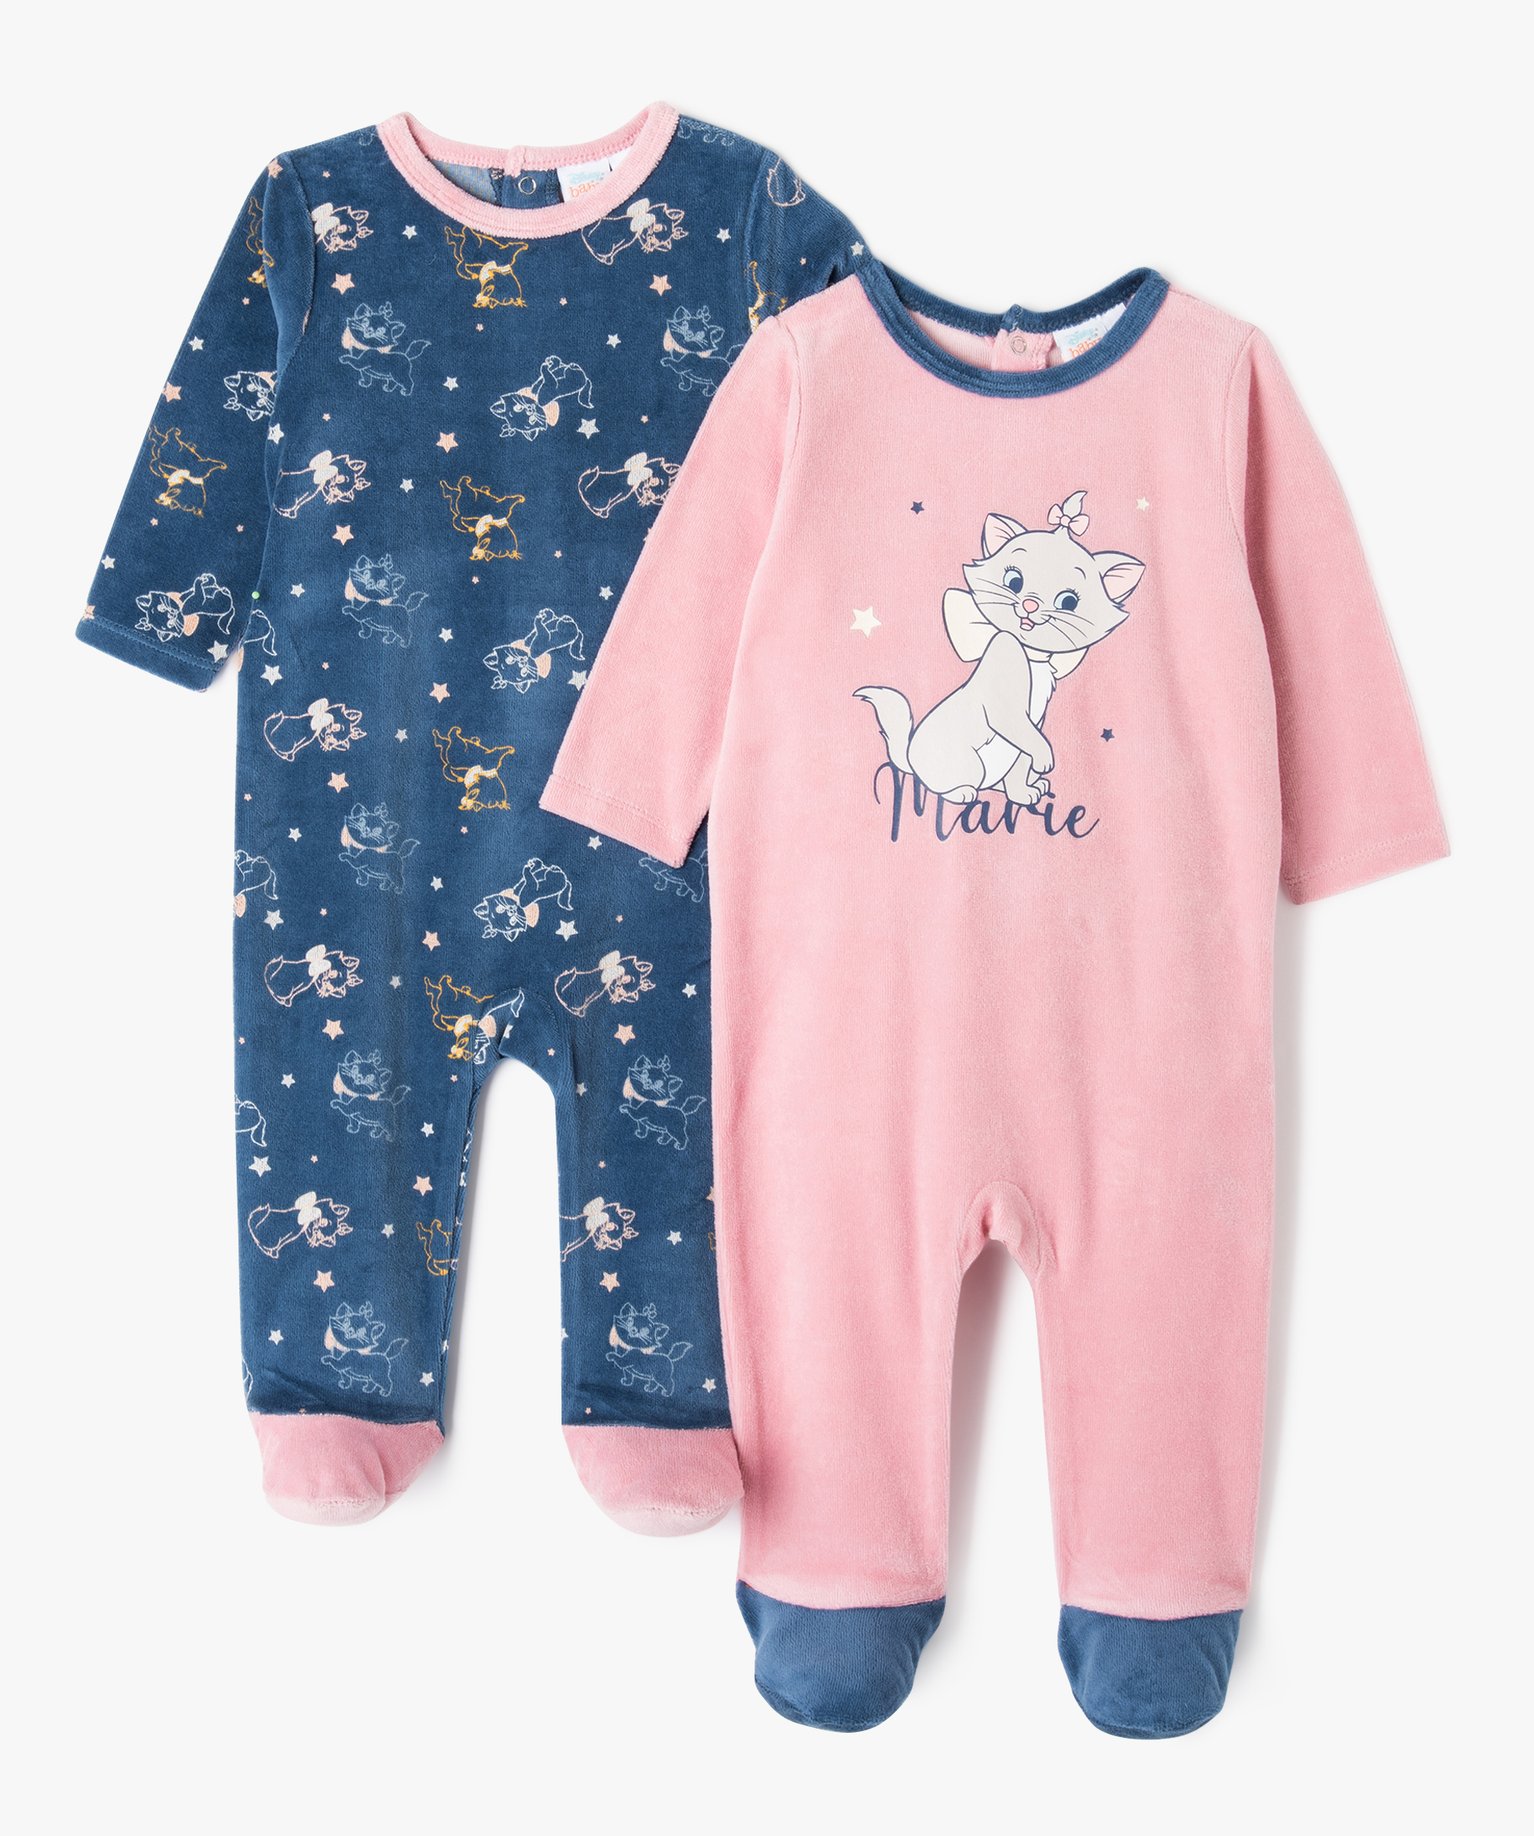 Pyjama dors bien velours motifs Les Aristochats bébé fille (lot de 2) - Disney Baby - 1M - rose - DISNEY BABY